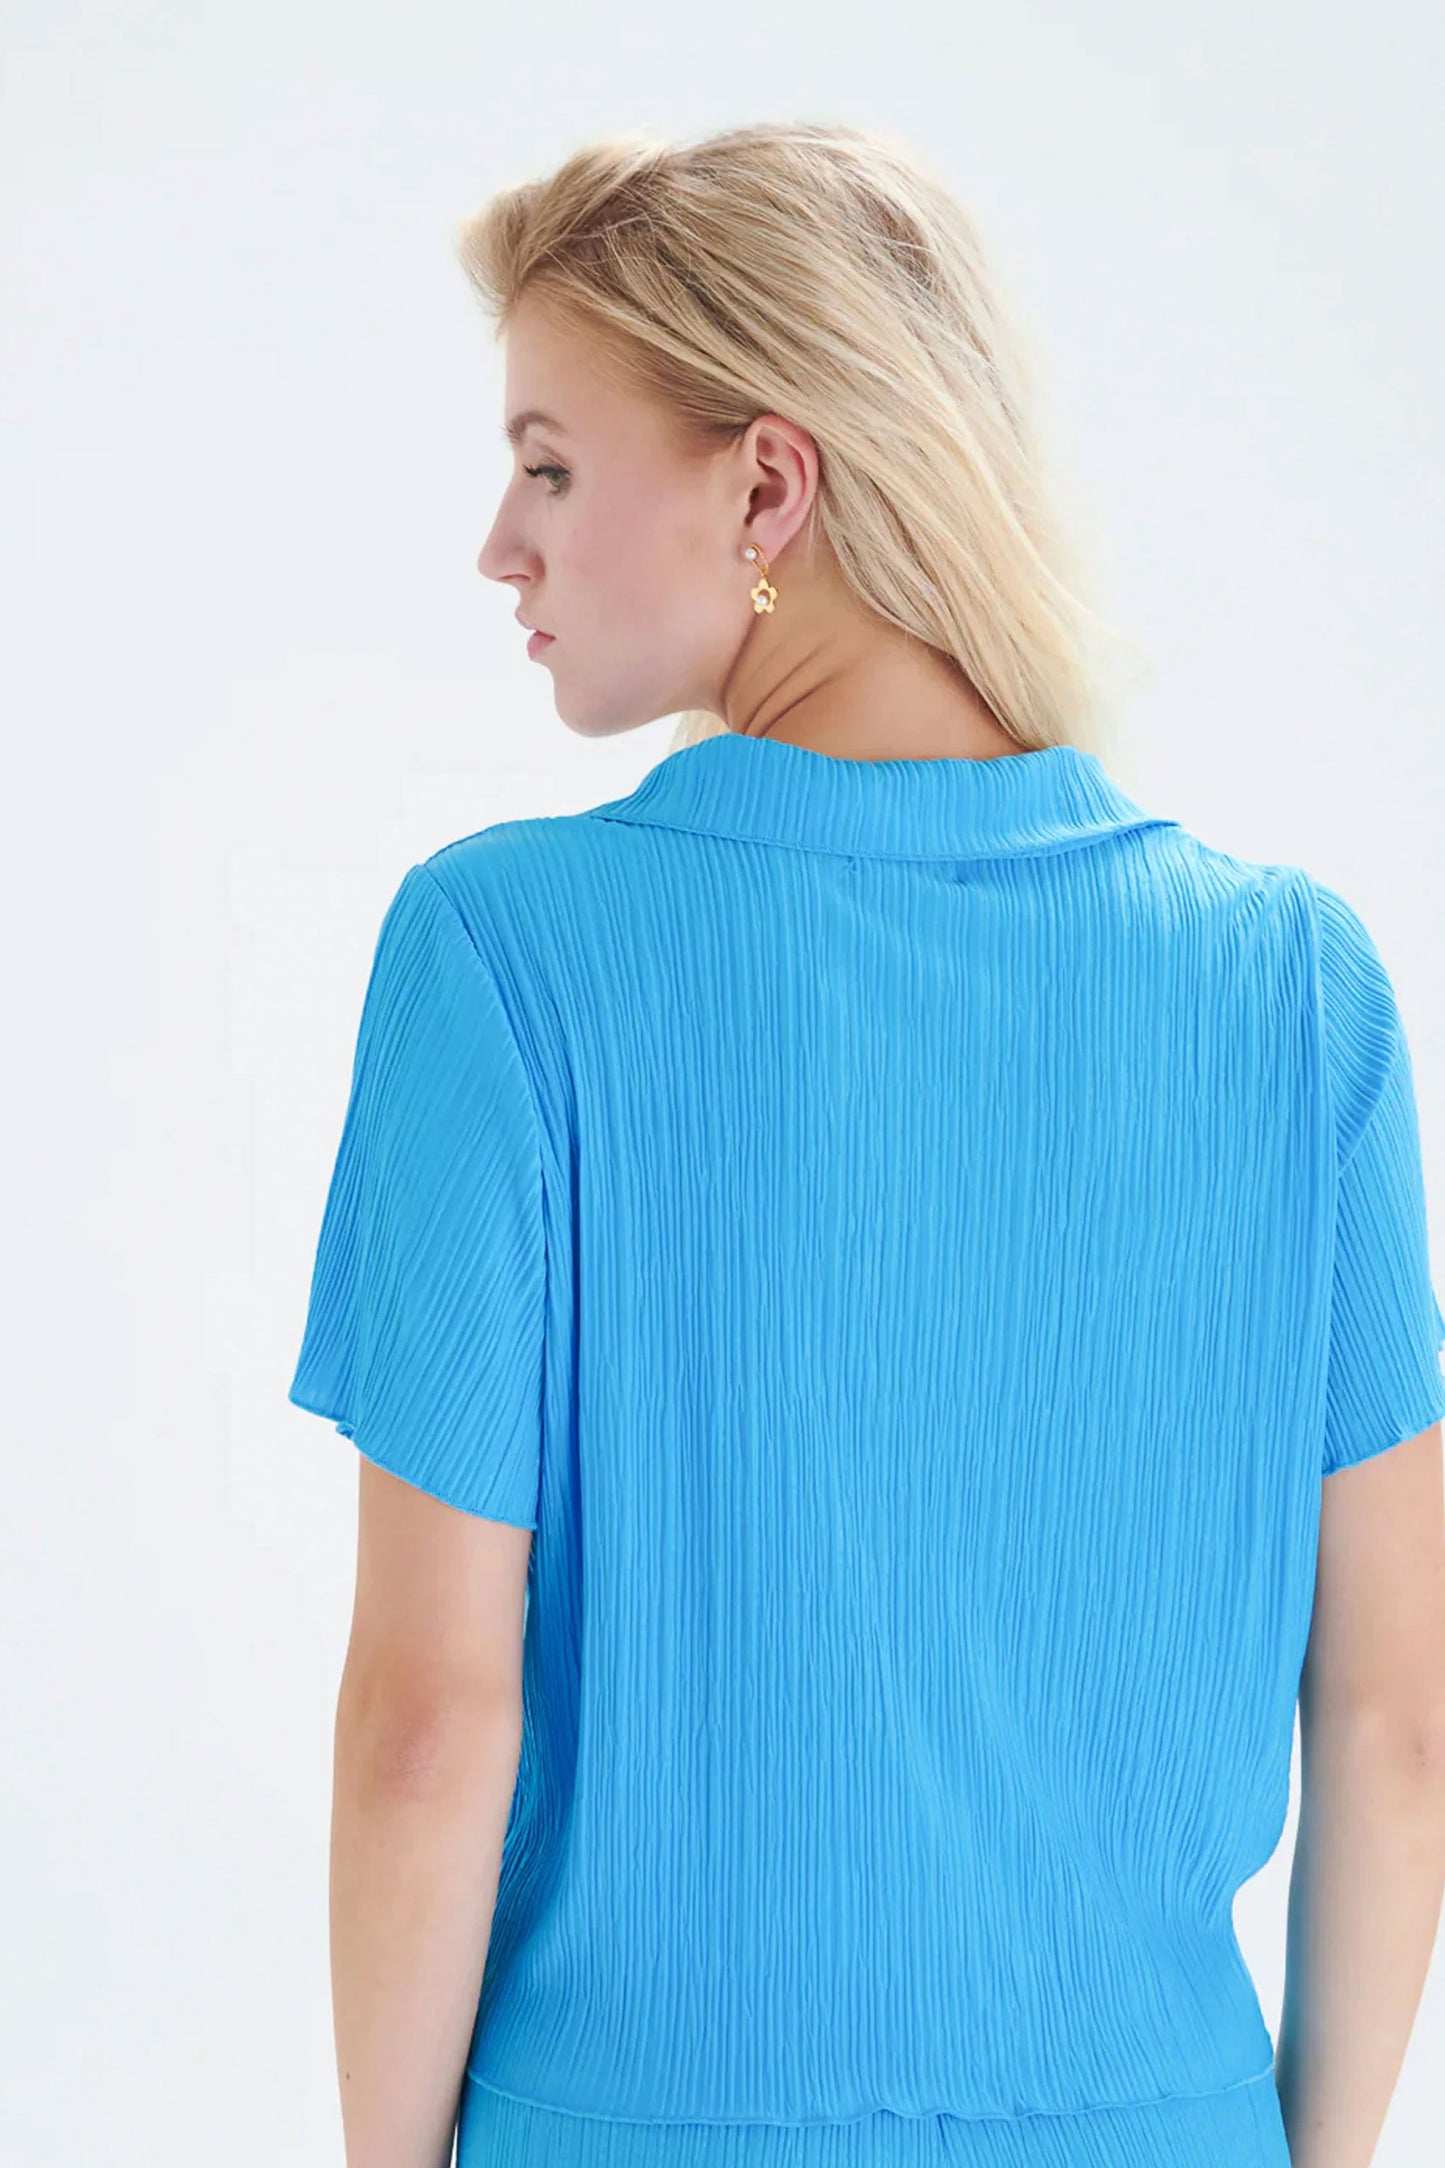 Pukas-Surf-Shop-woman-top-24colours-shirt-blue